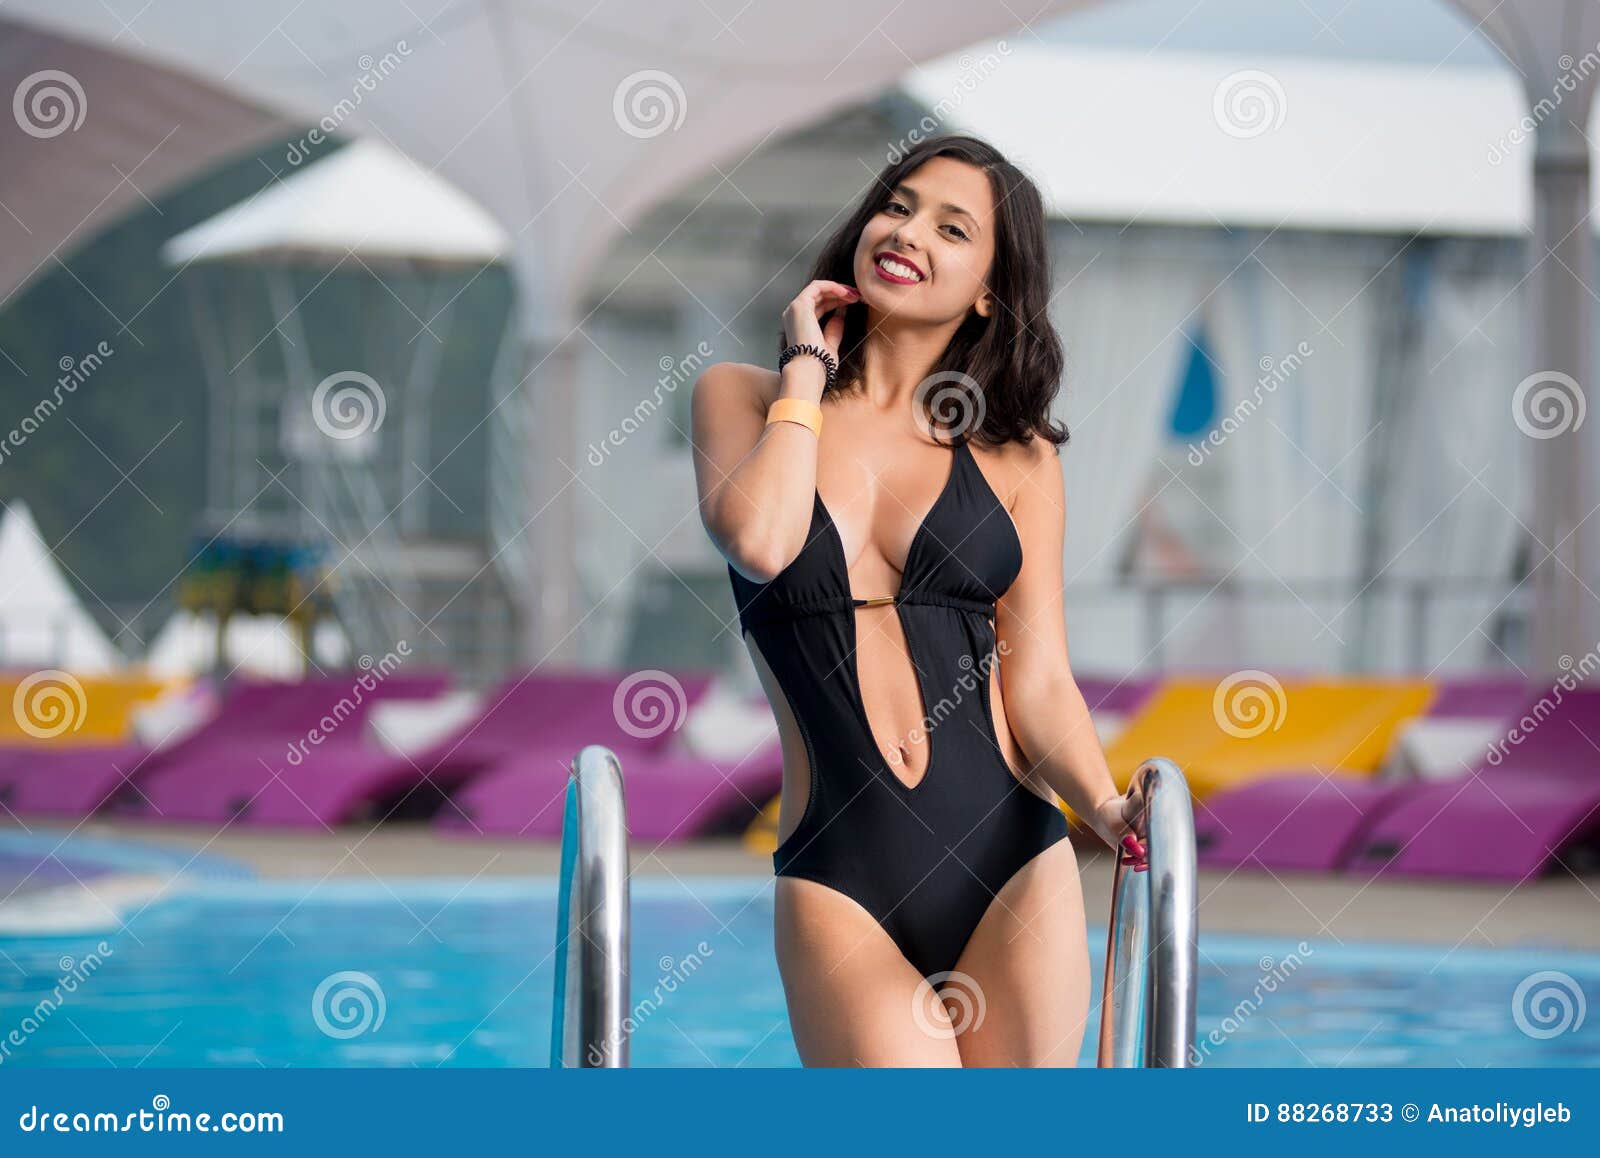 Зрелая девушка возле бассейна